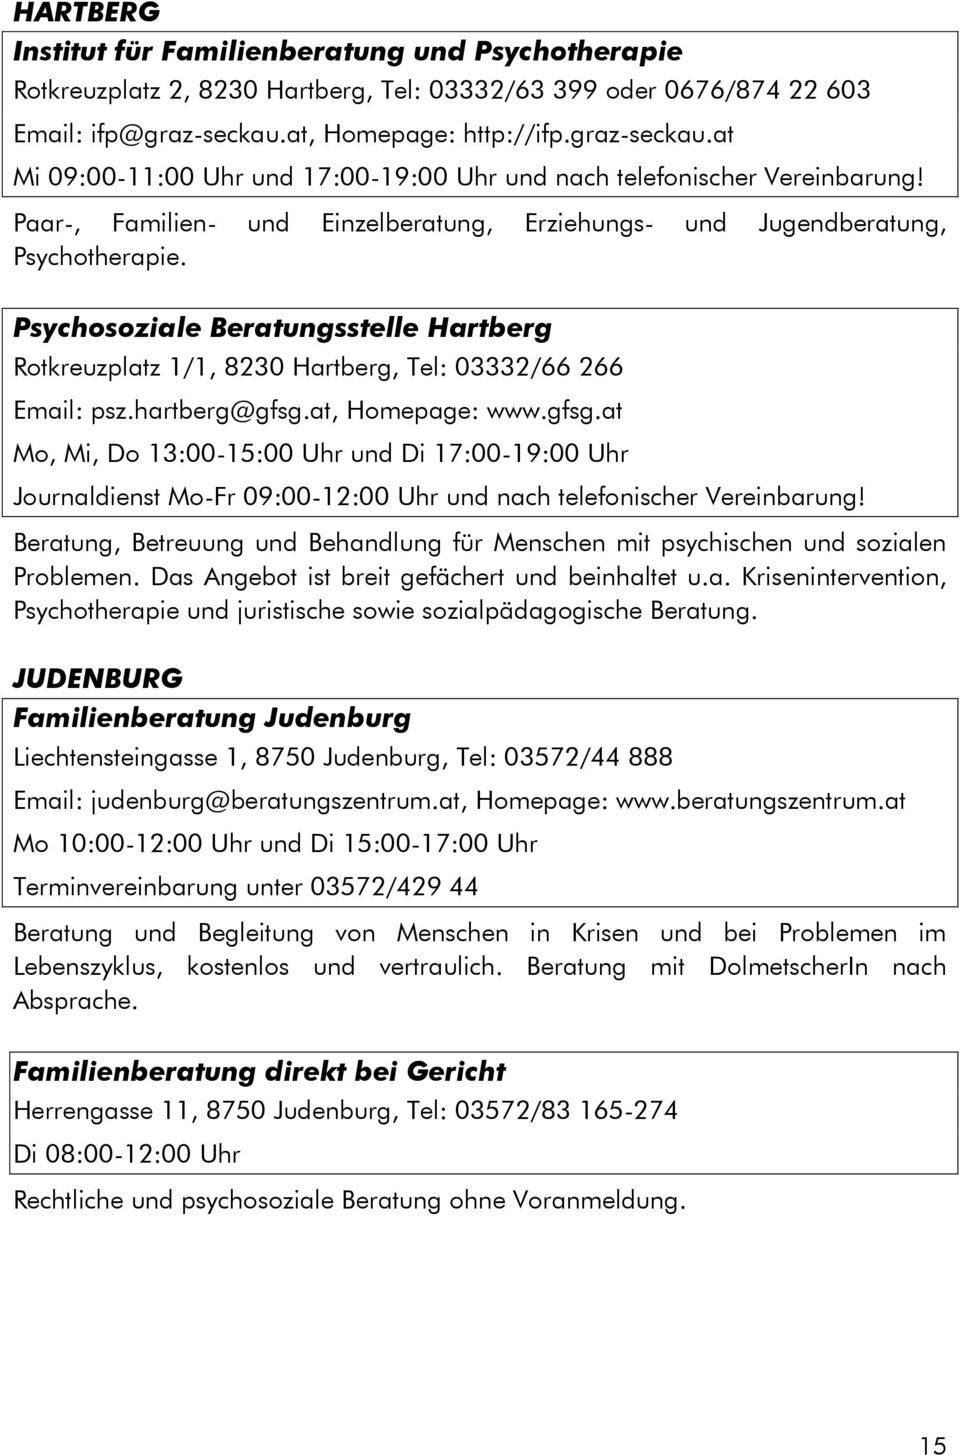 Psychosoziale Beratungsstelle Hartberg Rotkreuzplatz 1/1, 8230 Hartberg, Tel: 03332/66 266 Email: psz.hartberg@gfsg.